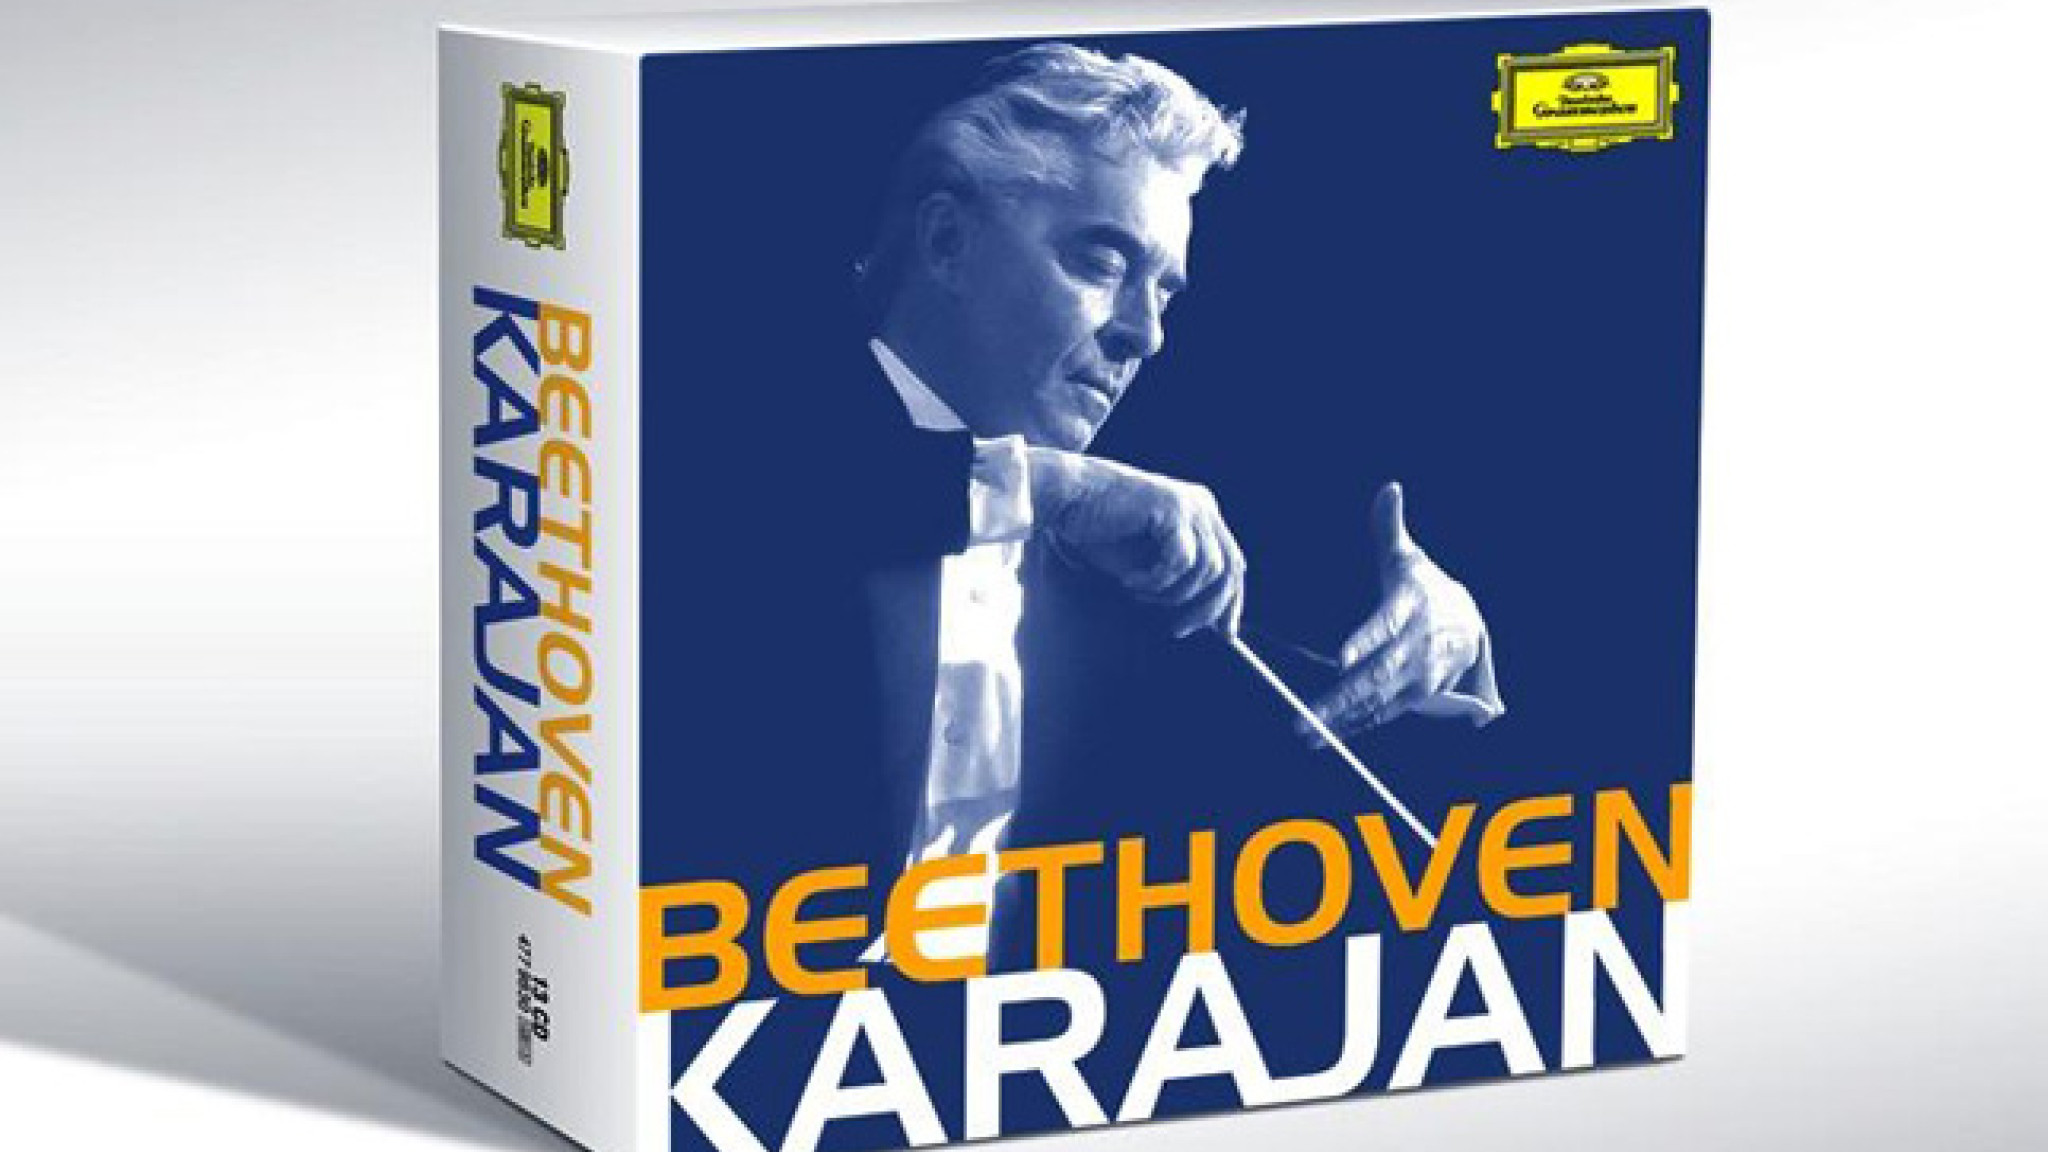 Karajan Beethoven Packshot